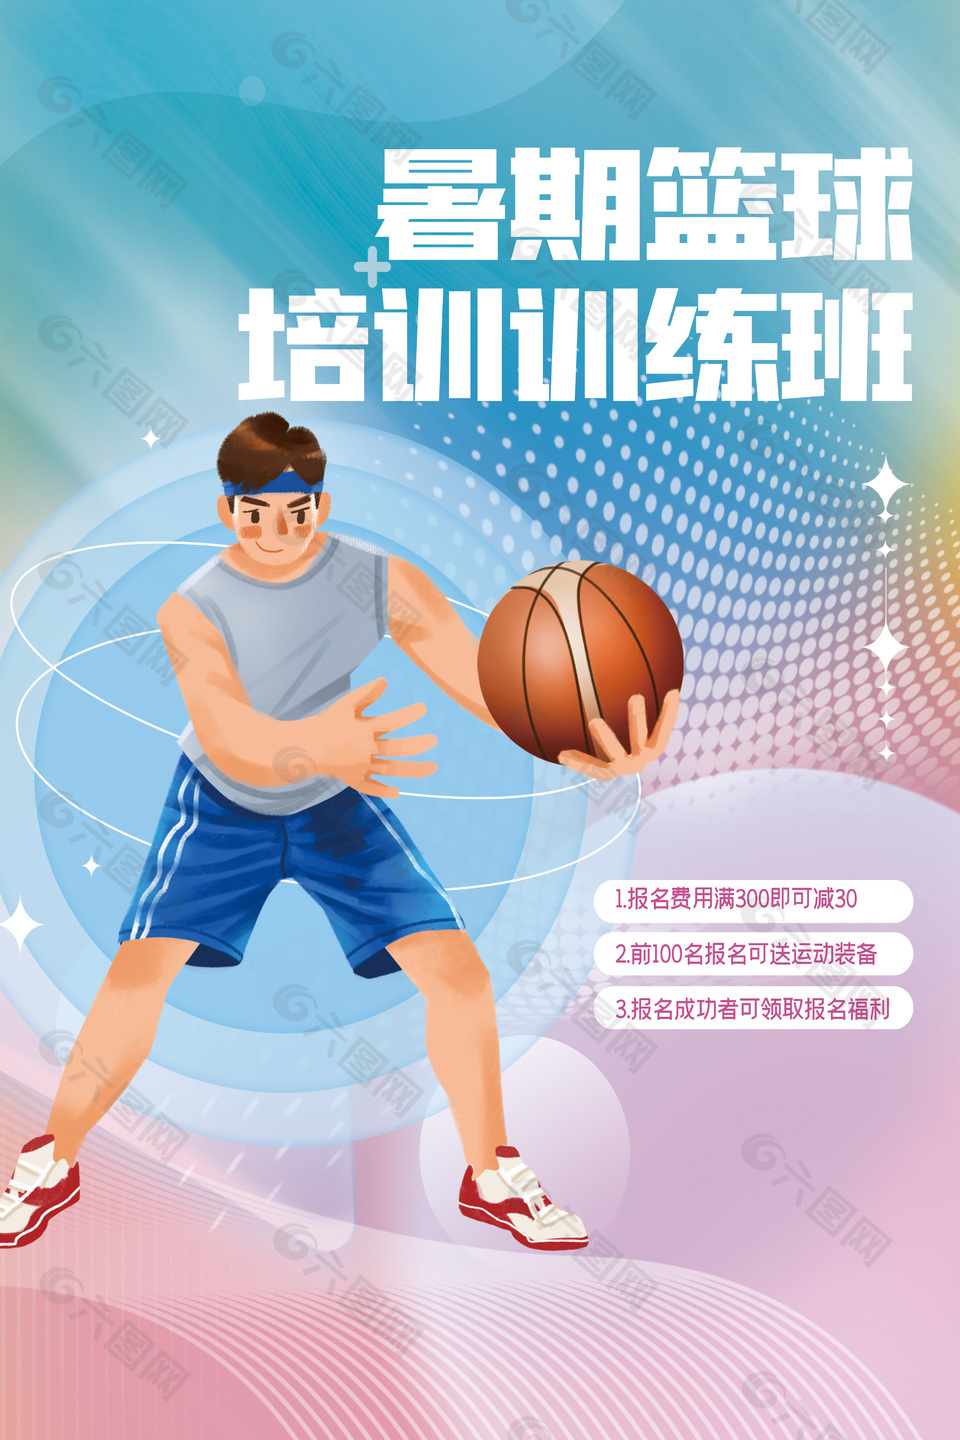 篮球培训班简约风格宣传海报